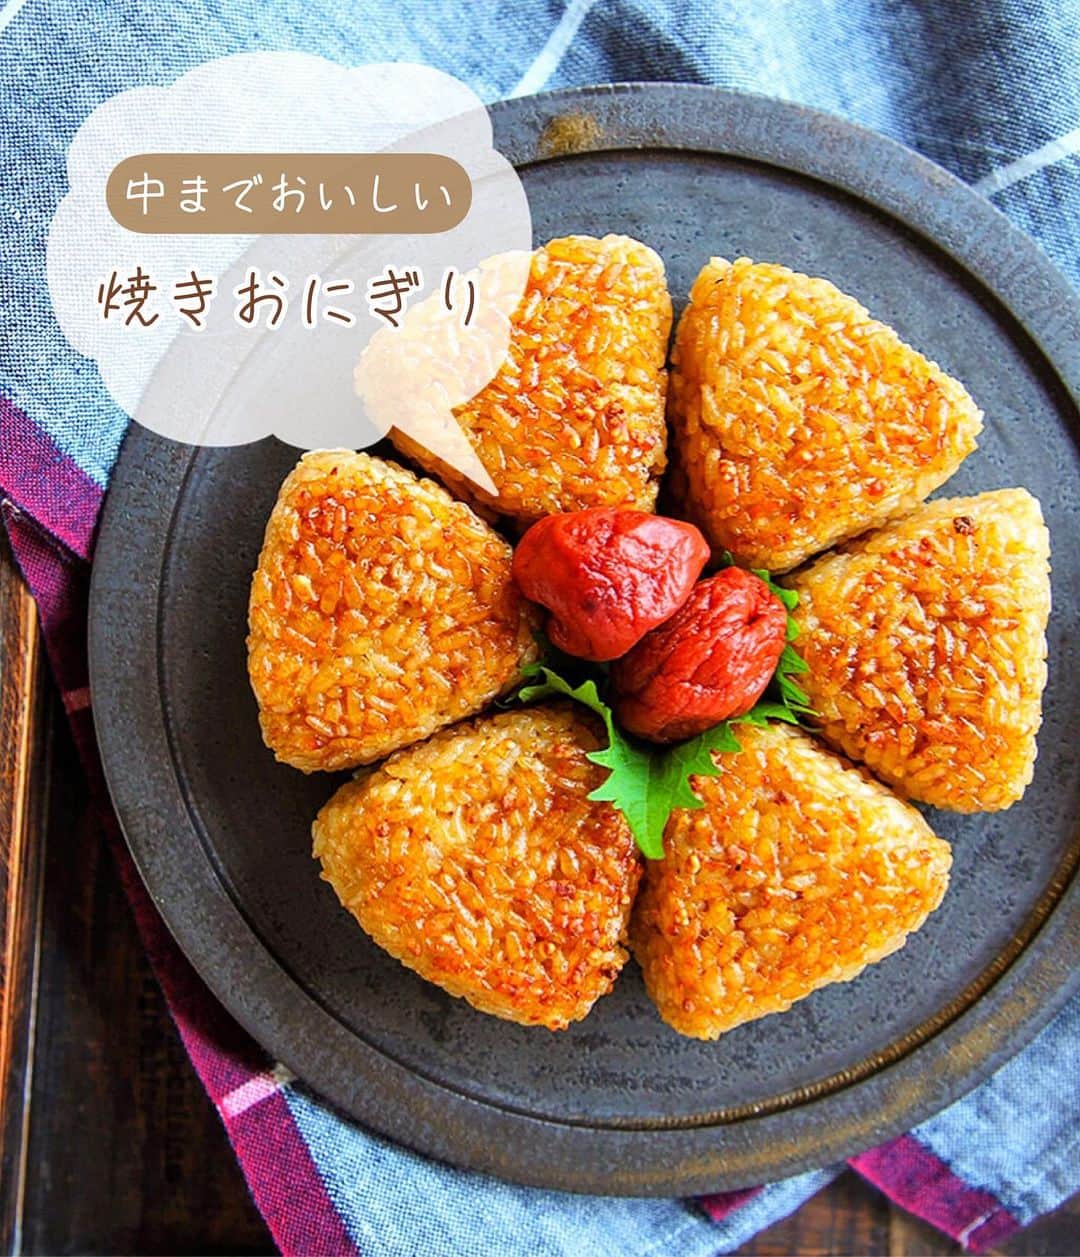 Mizuki【料理ブロガー・簡単レシピ】のインスタグラム：「・自家製冷食にも💕 ⁡ ［#レシピ ］ ーーーーーーーーーーーーーー 中までおいしい焼きおにぎり ーーーーーーーーーーーーーー ⁡ ⁡ ⁡ おはようございます☺️ ⁡ 今日ご紹介させていただくのは \ 中までおいしい焼きおにぎり / (再掲載✨) ⁡ あの焼きおにぎりを自宅で再現❣️ しかも自分で作れば超低コスト👌 調味料を混ぜ込むから 中までおいしく仕上がりますよ〜😋 ⁡ 冷凍保存もできるので よかったらお試し下さいね💕 ⁡ ⁡ ⁡ ⋱⋰ ⋱⋰ ⋱⋰ ⋱⋰ ⋱⋰ ⋱⋰ ⋱⋰ 📍簡単・時短・節約レシピ更新中  Threadsもこちらから▼ @mizuki_31cafe ⁡ 📍謎の暮らし＆変なライブ垢 @mizuki_kurashi ⋱⋰ ⋱⋰ ⋱⋰ ⋱⋰ ⋱⋰ ⋱⋰ ⋱⋰ ⁡ ⁡ ⁡ ＿＿＿＿＿＿＿＿＿＿＿＿＿＿＿＿＿＿＿ 【6個分】 温かいごはん...400g 顆粒和風だし...大1/2 めんつゆ(2倍濃縮)...大1 醤油...小2 みりん・ごま油...各小1 ⁡ 1.ボウルに全ての材料を入れて混ぜ、6等分しておにぎりを作る。 2.アルミホイルに薄く油(分量外)をのばし、1をのせ、トースターで片面6〜7分ずつ焼く。 ￣￣￣￣￣￣￣￣￣￣￣￣￣￣￣￣￣￣￣ ⁡ ⁡ 《ポイント》 ♦︎アルミホイルに油を塗るとくっつきにくくなります♩まずヘラで底を剥がしてから裏返してください♩ ♦︎焼き時間は目安です☆好みの焼き色が付くまで焼いてください♩ ♦︎好みで(途中で)表面に醤油を塗っても◎香ばしさがアップします♩ ♦︎ひとつずつラップで包んで冷凍も◎ ♦︎めんつゆが3倍濃縮の場合は2/3量、4倍濃縮の場合は1/2量にしてください♩ ⁡ ⁡ ⁡ ⁡ ⁡ 💬💬💬 (いつできるかわからない) 本の撮影がはじまりました🌸 しばらくの間 投稿したり、できなかったり お返事できないこともあると思いますが よろしくお願いいたします🙇‍♀️✨ ⁡ ⁡ ⁡ ⁡ ⁡ ⁡ ⋱⋰ ⋱⋰ ⋱⋰ ⋱⋰ ⋱⋰ ⋱⋰ ⋱⋰  愛用している調理器具・器など   #楽天ROOMに載せてます ‎𐩢𐩺  (ハイライトから飛べます🕊️) ⋱⋰ ⋱⋰ ⋱⋰ ⋱⋰ ⋱⋰ ⋱⋰ ⋱⋰ ⁡ ⁡ ⁡ ⁡ ⁡ ✼••┈┈┈┈┈••✼••┈┈┈┈┈••✼ 今日のごはんこれに決まり！ ‎𓊆#Mizukiのレシピノート 500品𓊇 ✼••┈┈┈┈┈••✼••┈┈┈┈┈••✼ ⁡ ˗ˏˋ おかげさまで25万部突破 ˎˊ˗ 料理レシピ本大賞準大賞を受賞しました✨ ⁡ 6000点の中からレシピを厳選し まさかの【500レシピ掲載】 肉や魚のメインおかずはもちろん 副菜、丼、麺、スープ、お菓子 ハレの日のレシピ、鍋のレシピまで 全てこの一冊で完結 𓌉◯𓇋 (全国の書店・ネット書店で発売中) ⁡ ⁡ ⁡ ⁡ ⁡ #onigiriaction  #焼きおにぎりm #焼きおにぎり #おにぎり #作り置き #節約料理  #簡単料理  #時短料理 #mizukiレシピ  #時短レシピ #節約レシピ #簡単レシピ」